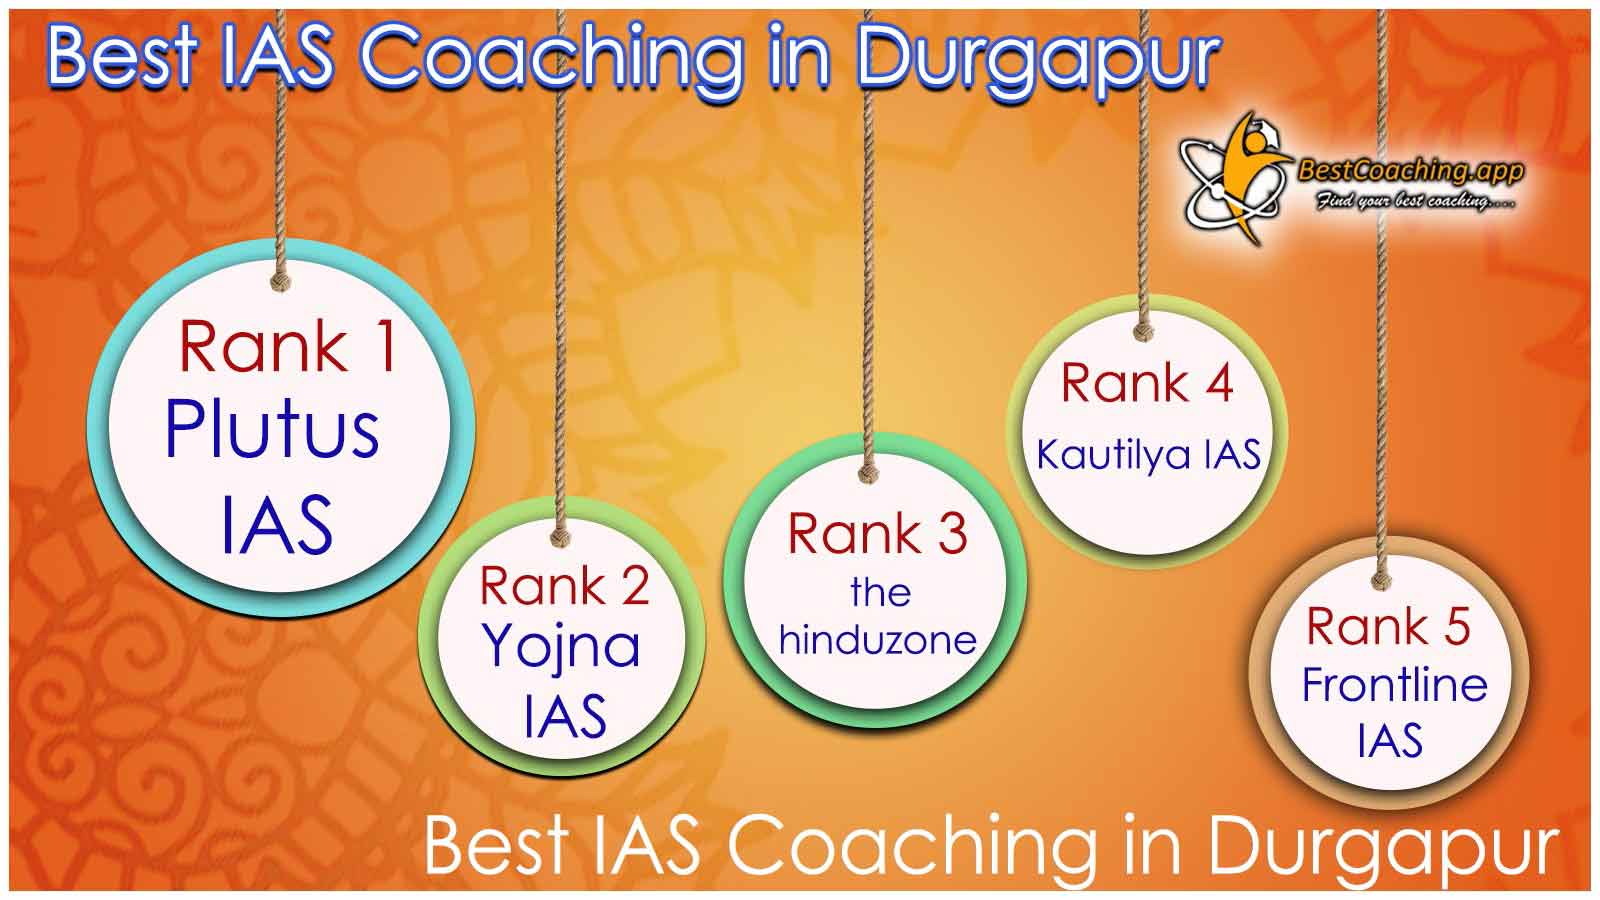 Best IAS Coaching in Durgapur